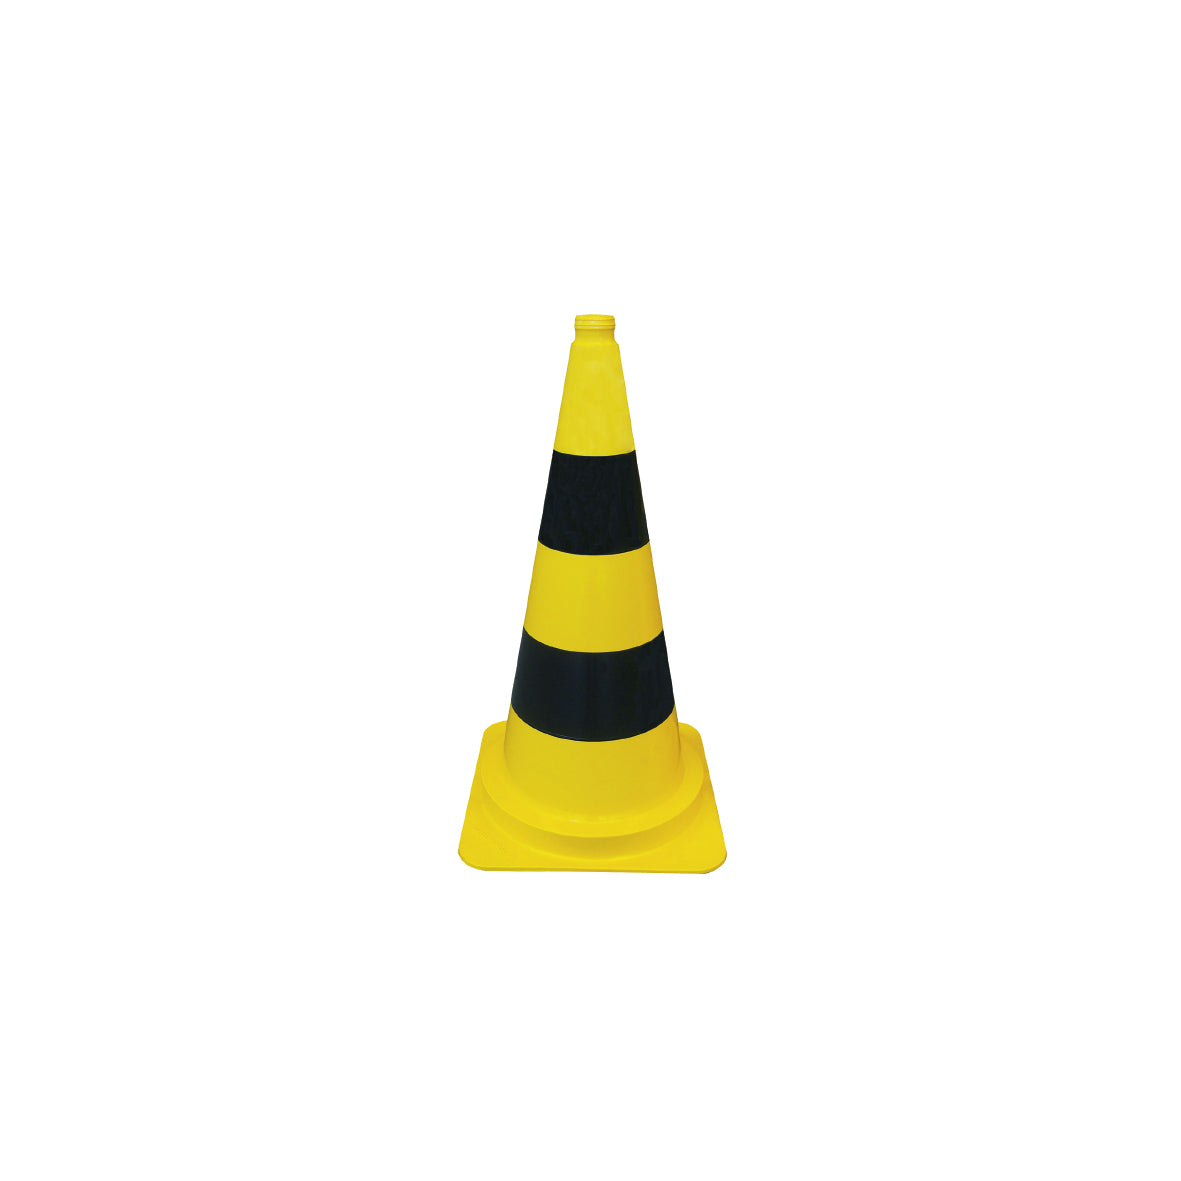 Verkehrsleitkegel gelb-schwarz, leicht, 2 Streifen, h = 50 cm, g = 1.3 kg